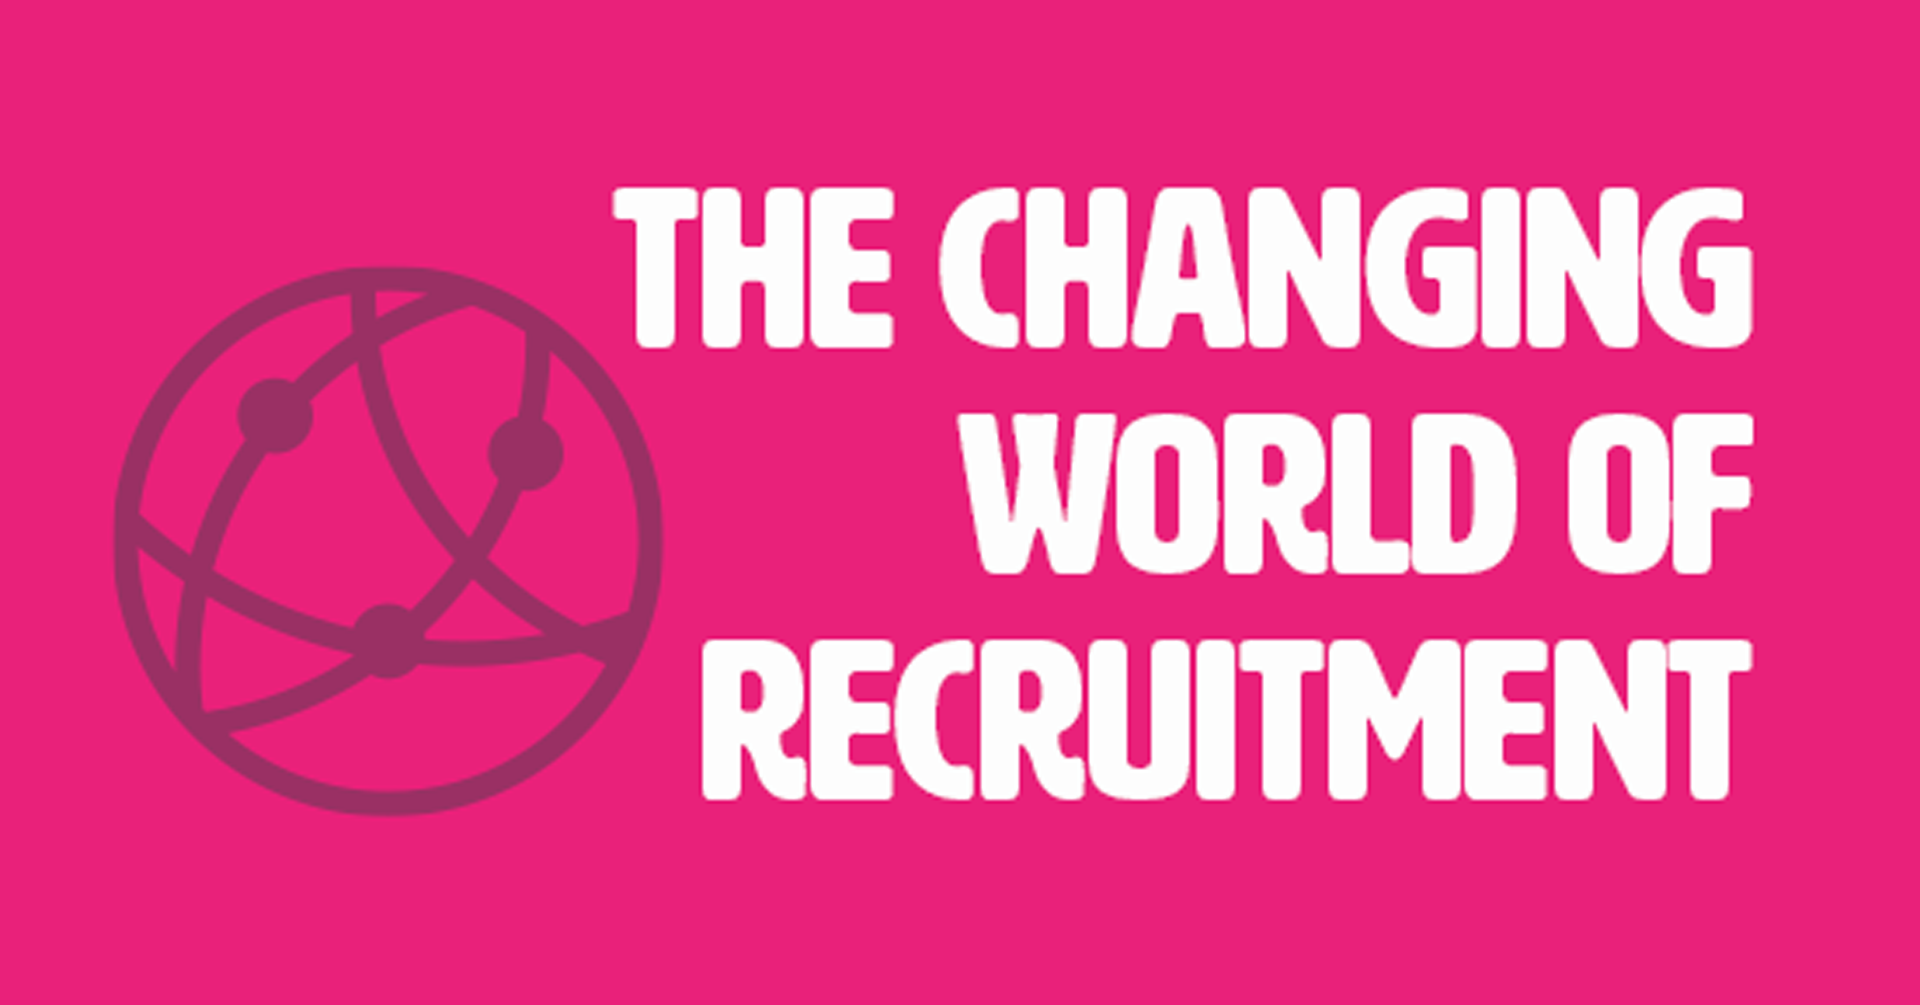 Blog-changing-recruitment-header-